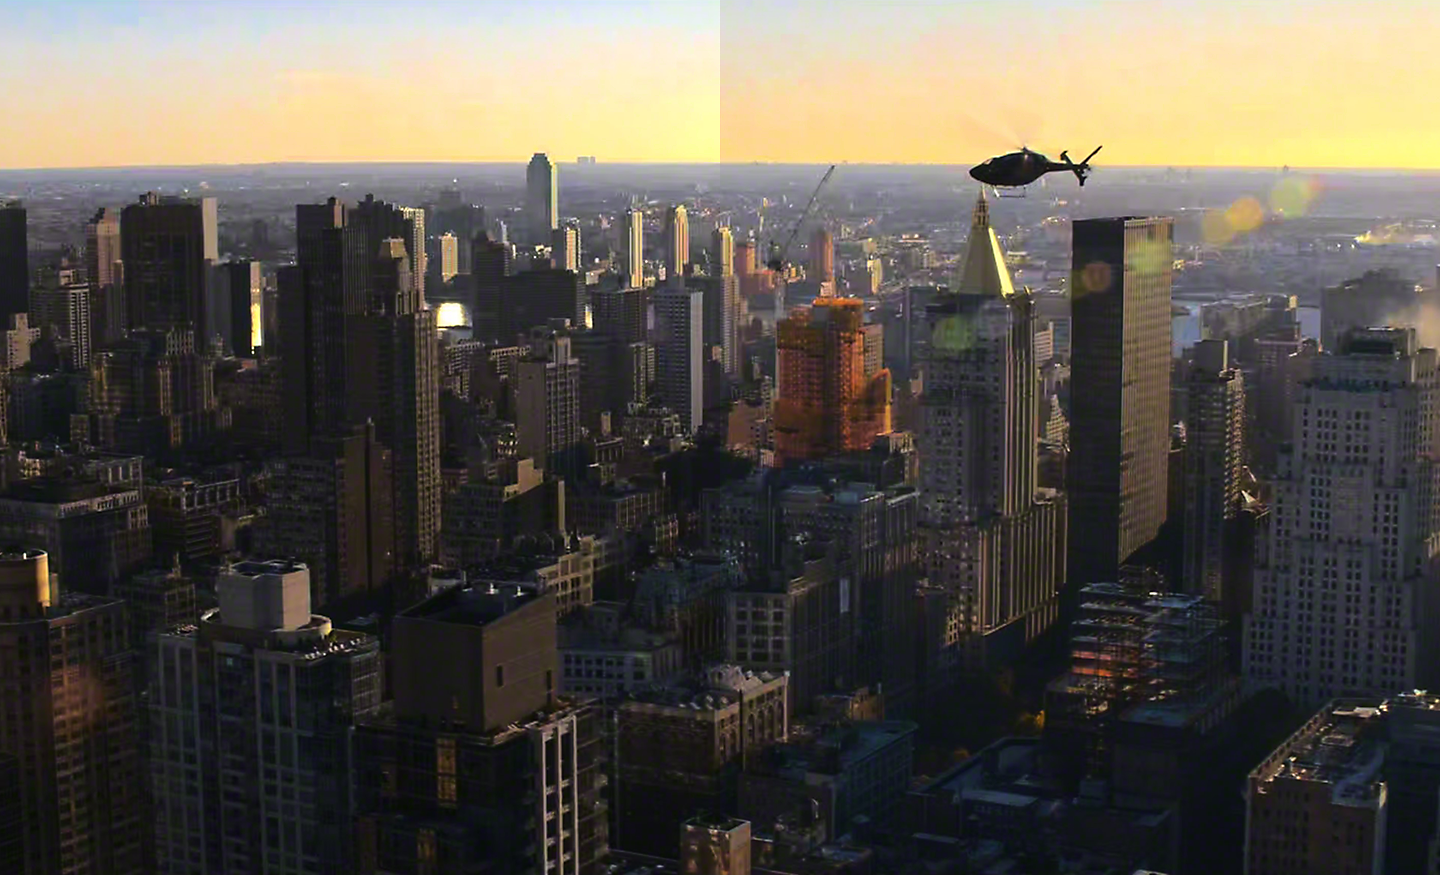 En helikopter som flyger över en stad i svagt ljus